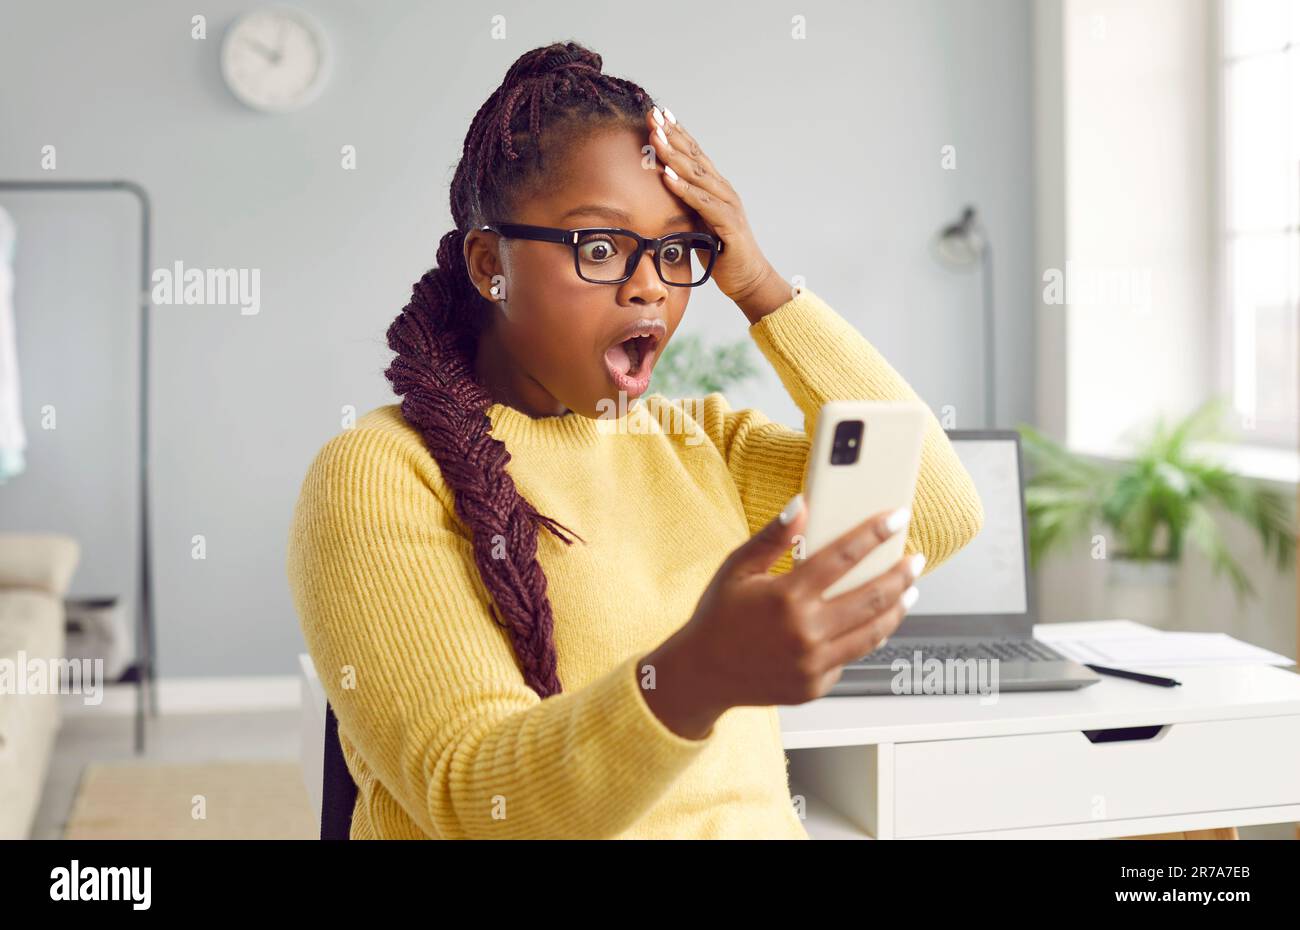 Eine wunderschöne afrikanische Frau sieht vor Schrecken auf das Telefon. Stockfoto